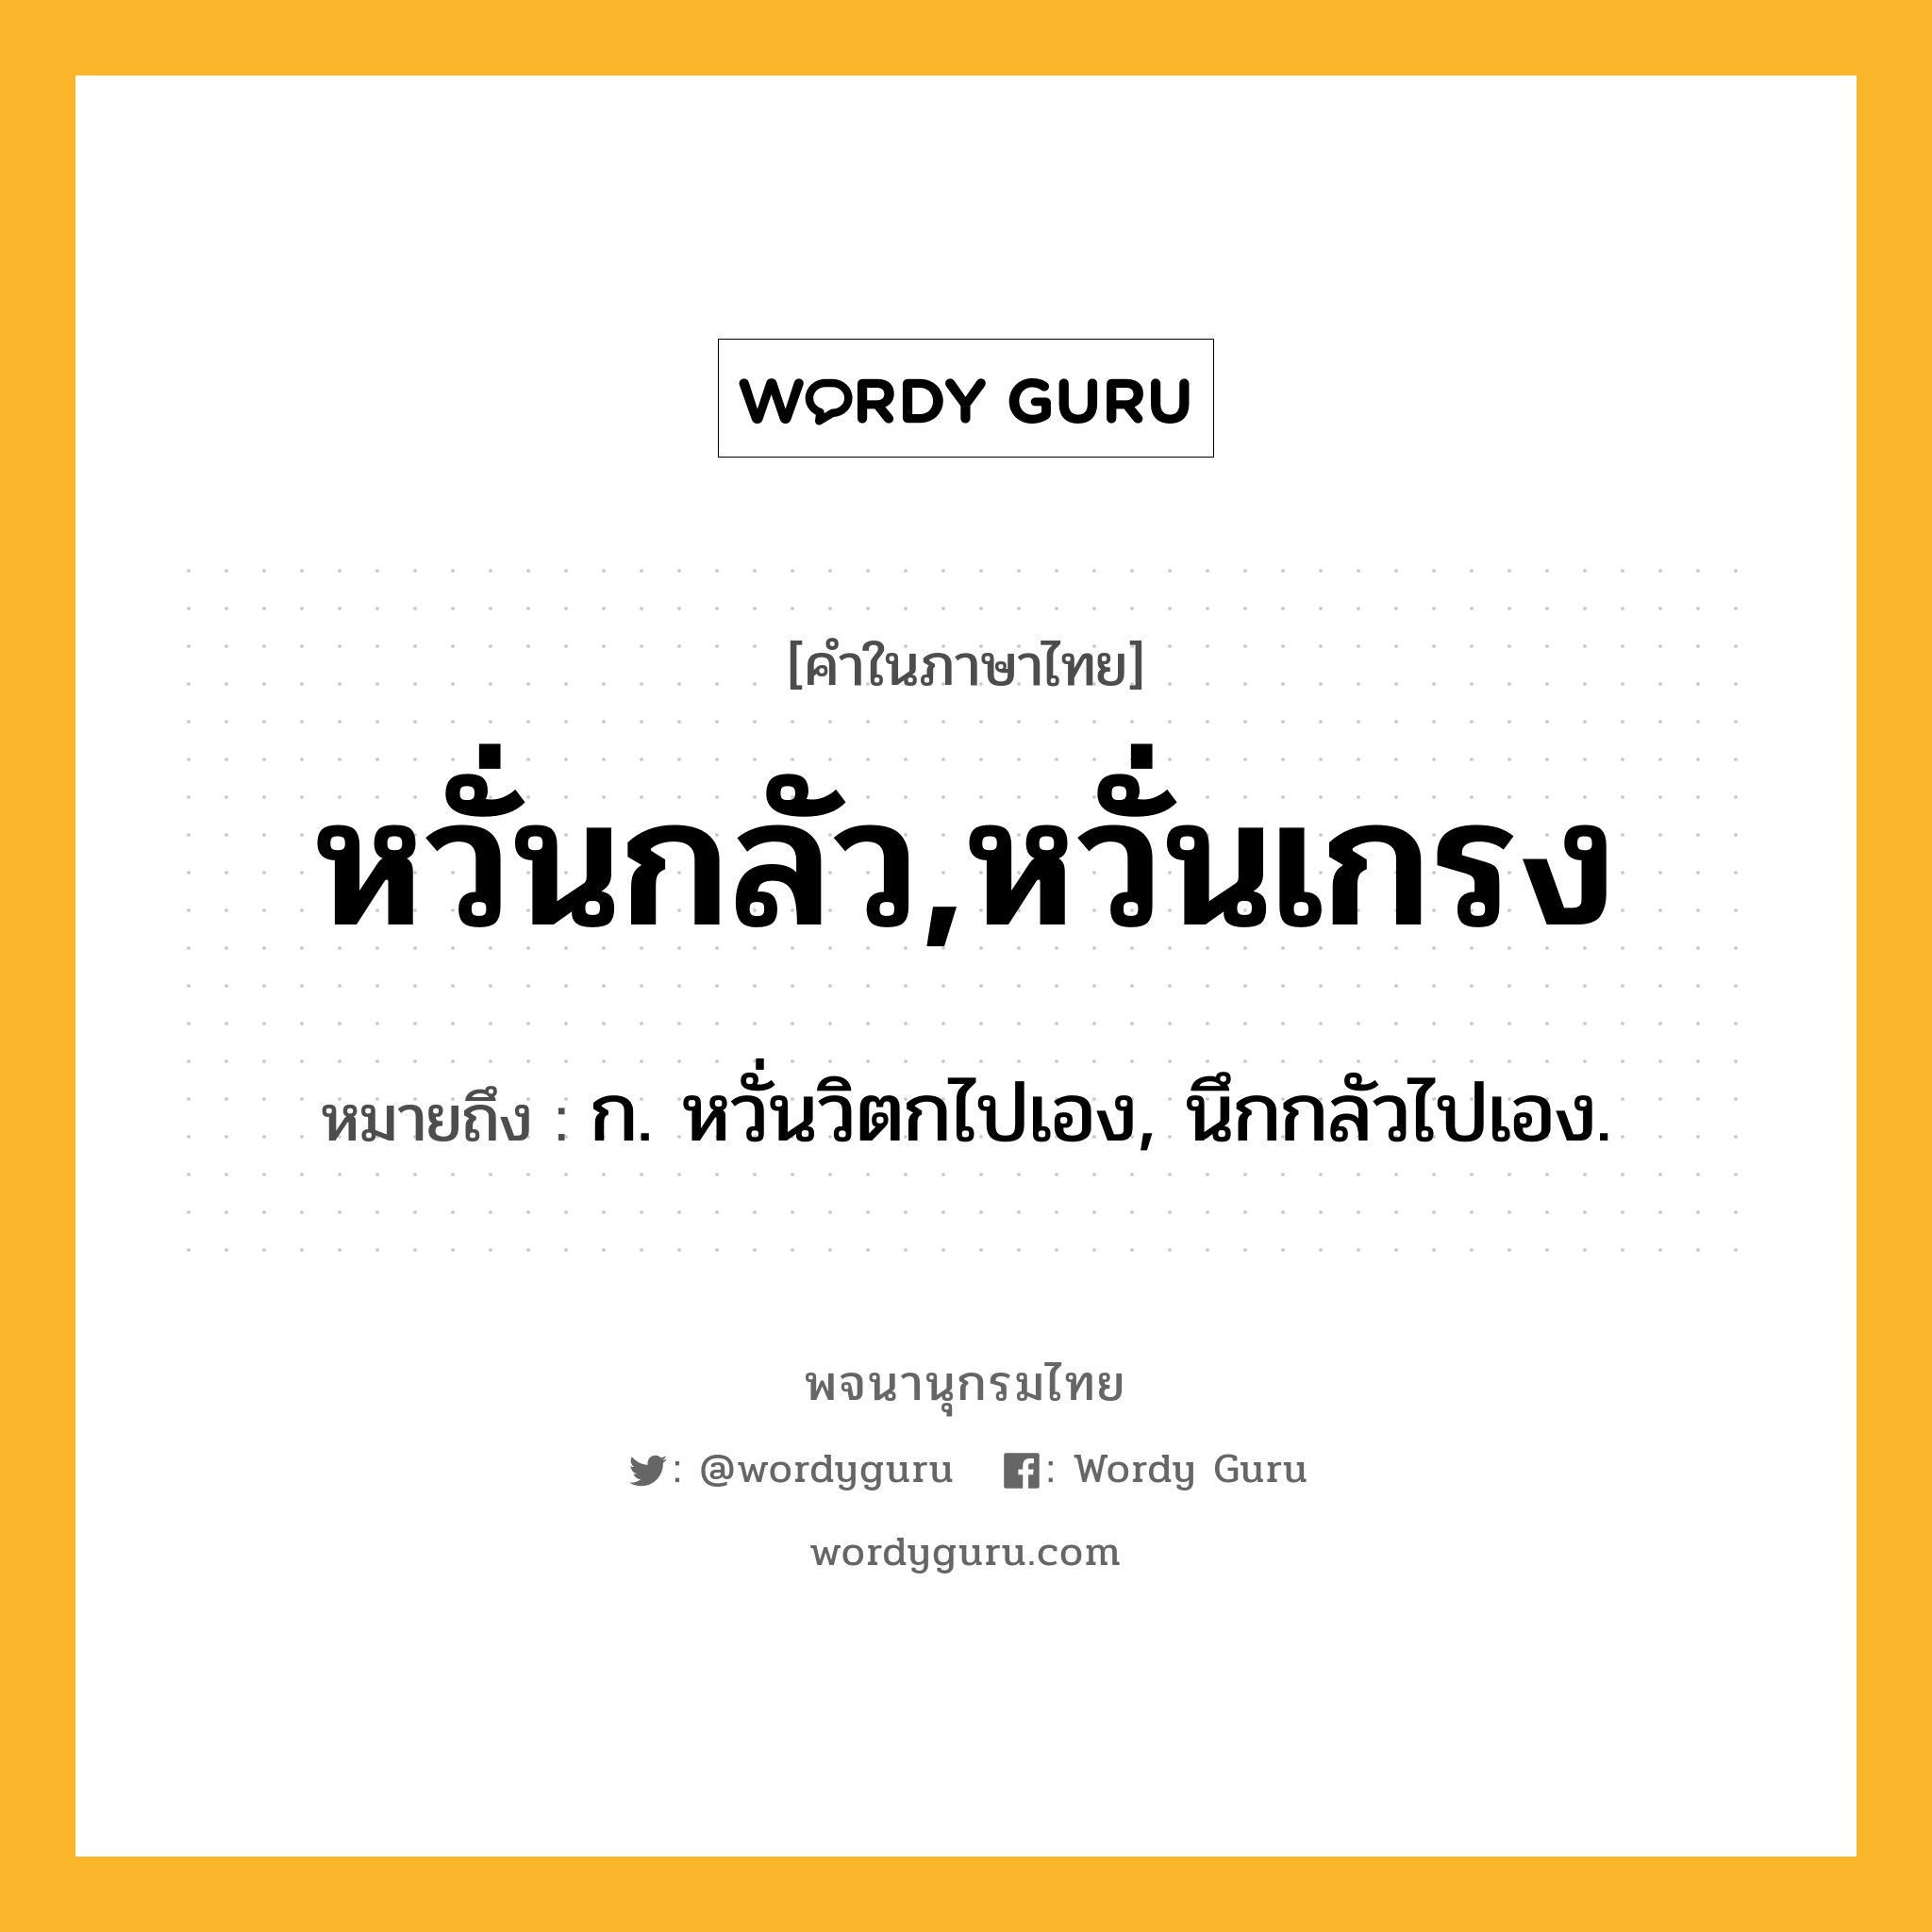 หวั่นกลัว,หวั่นเกรง ความหมาย หมายถึงอะไร?, คำในภาษาไทย หวั่นกลัว,หวั่นเกรง หมายถึง ก. หวั่นวิตกไปเอง, นึกกลัวไปเอง.